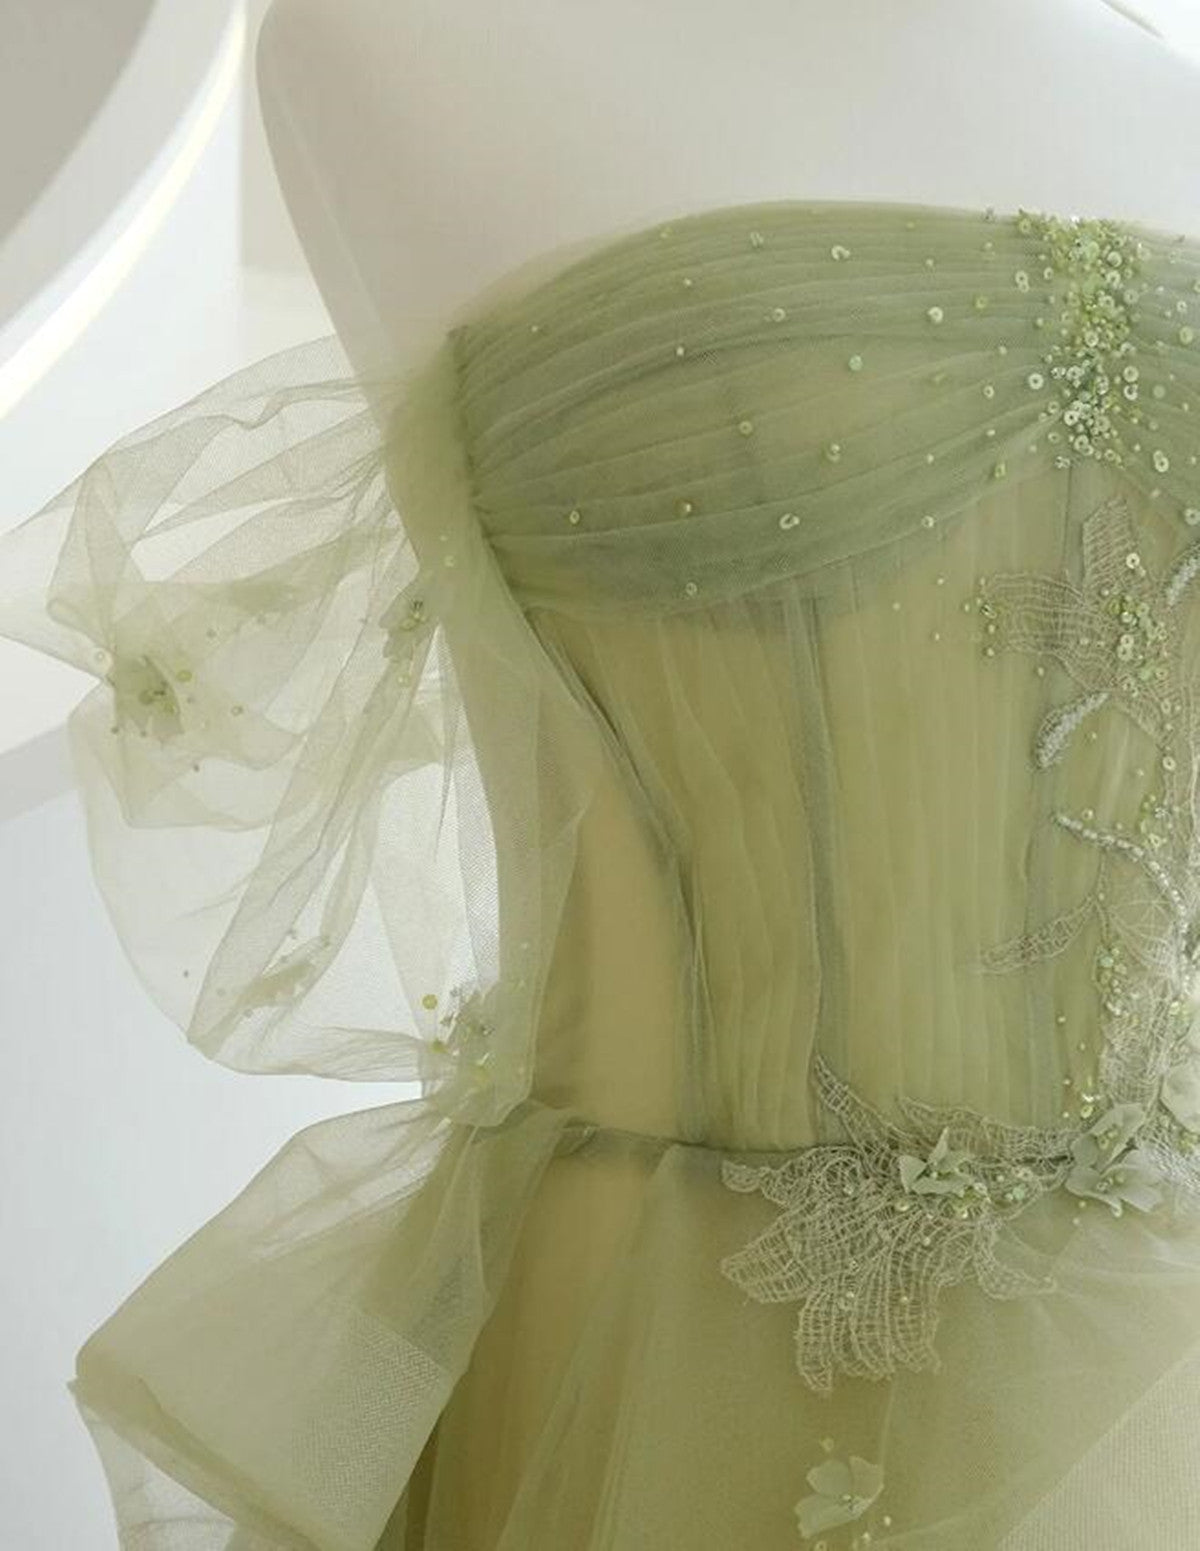 Light Green Sweetheart Off Shoulder Party Dress, A-line Green Evening Dress Prom Dress